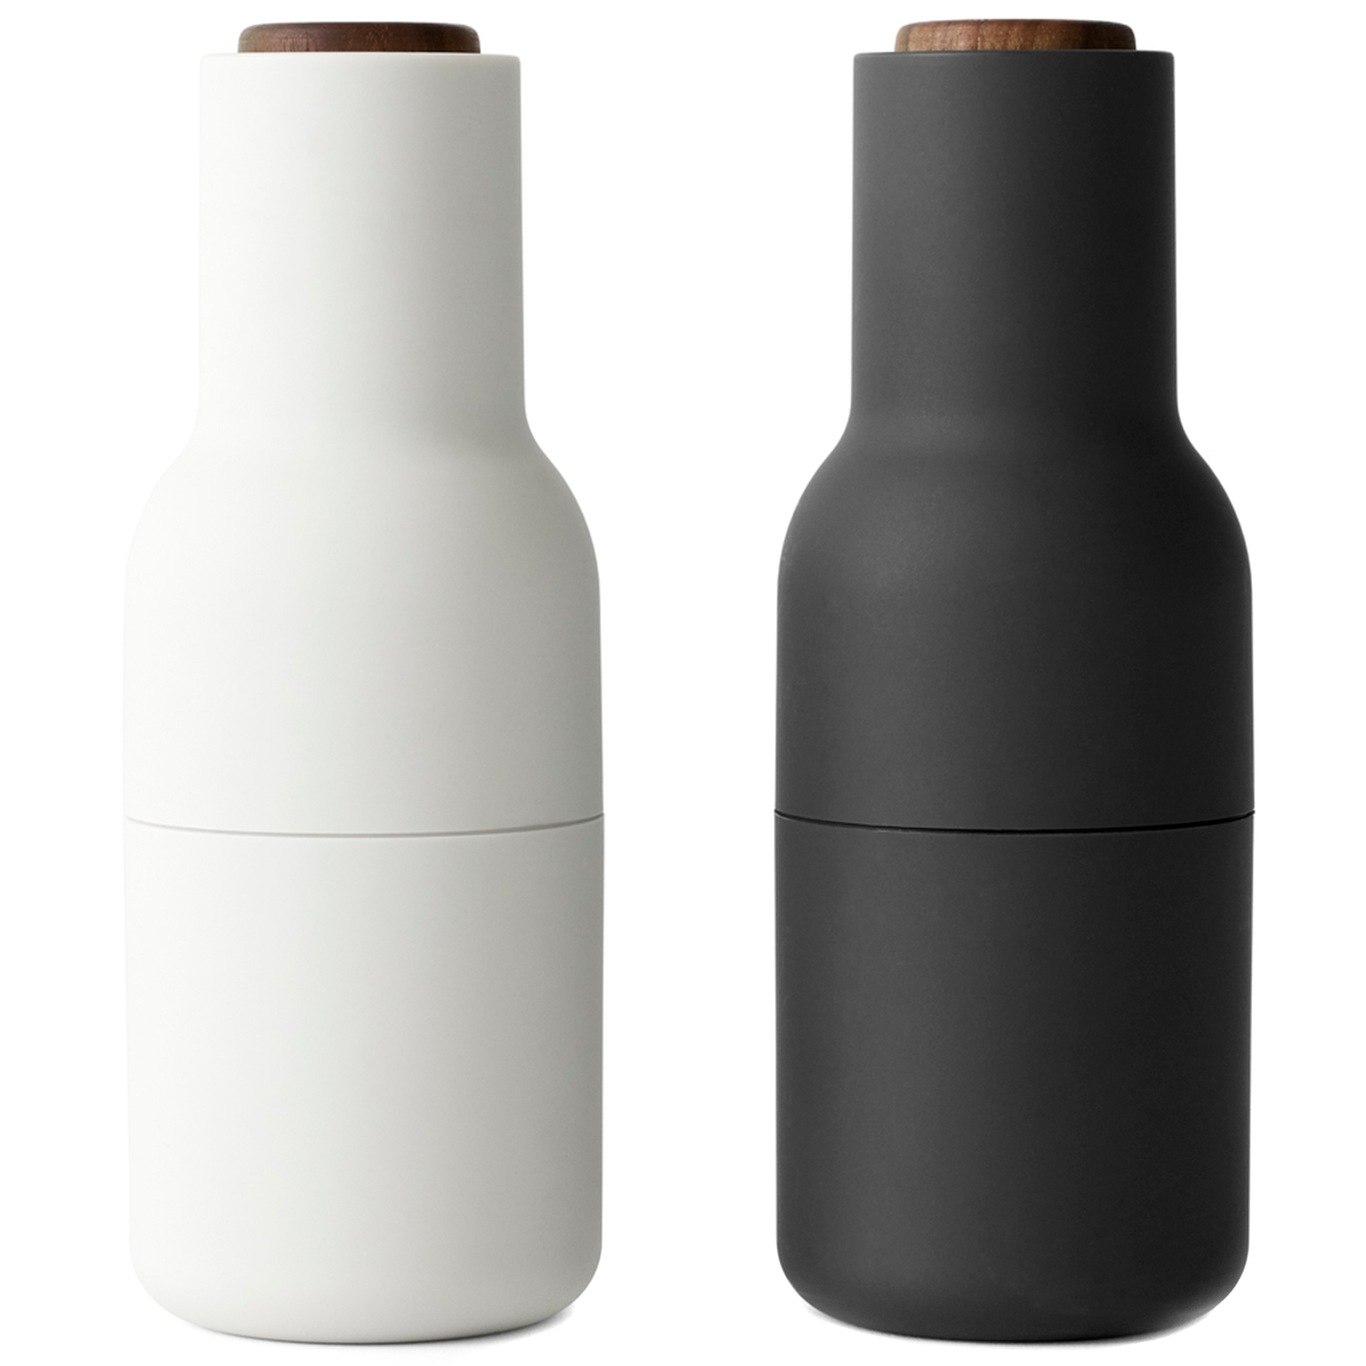 Bottle Grinder Gewürzmühle 2-er Set, Esche / Carbon / Walnussfarben